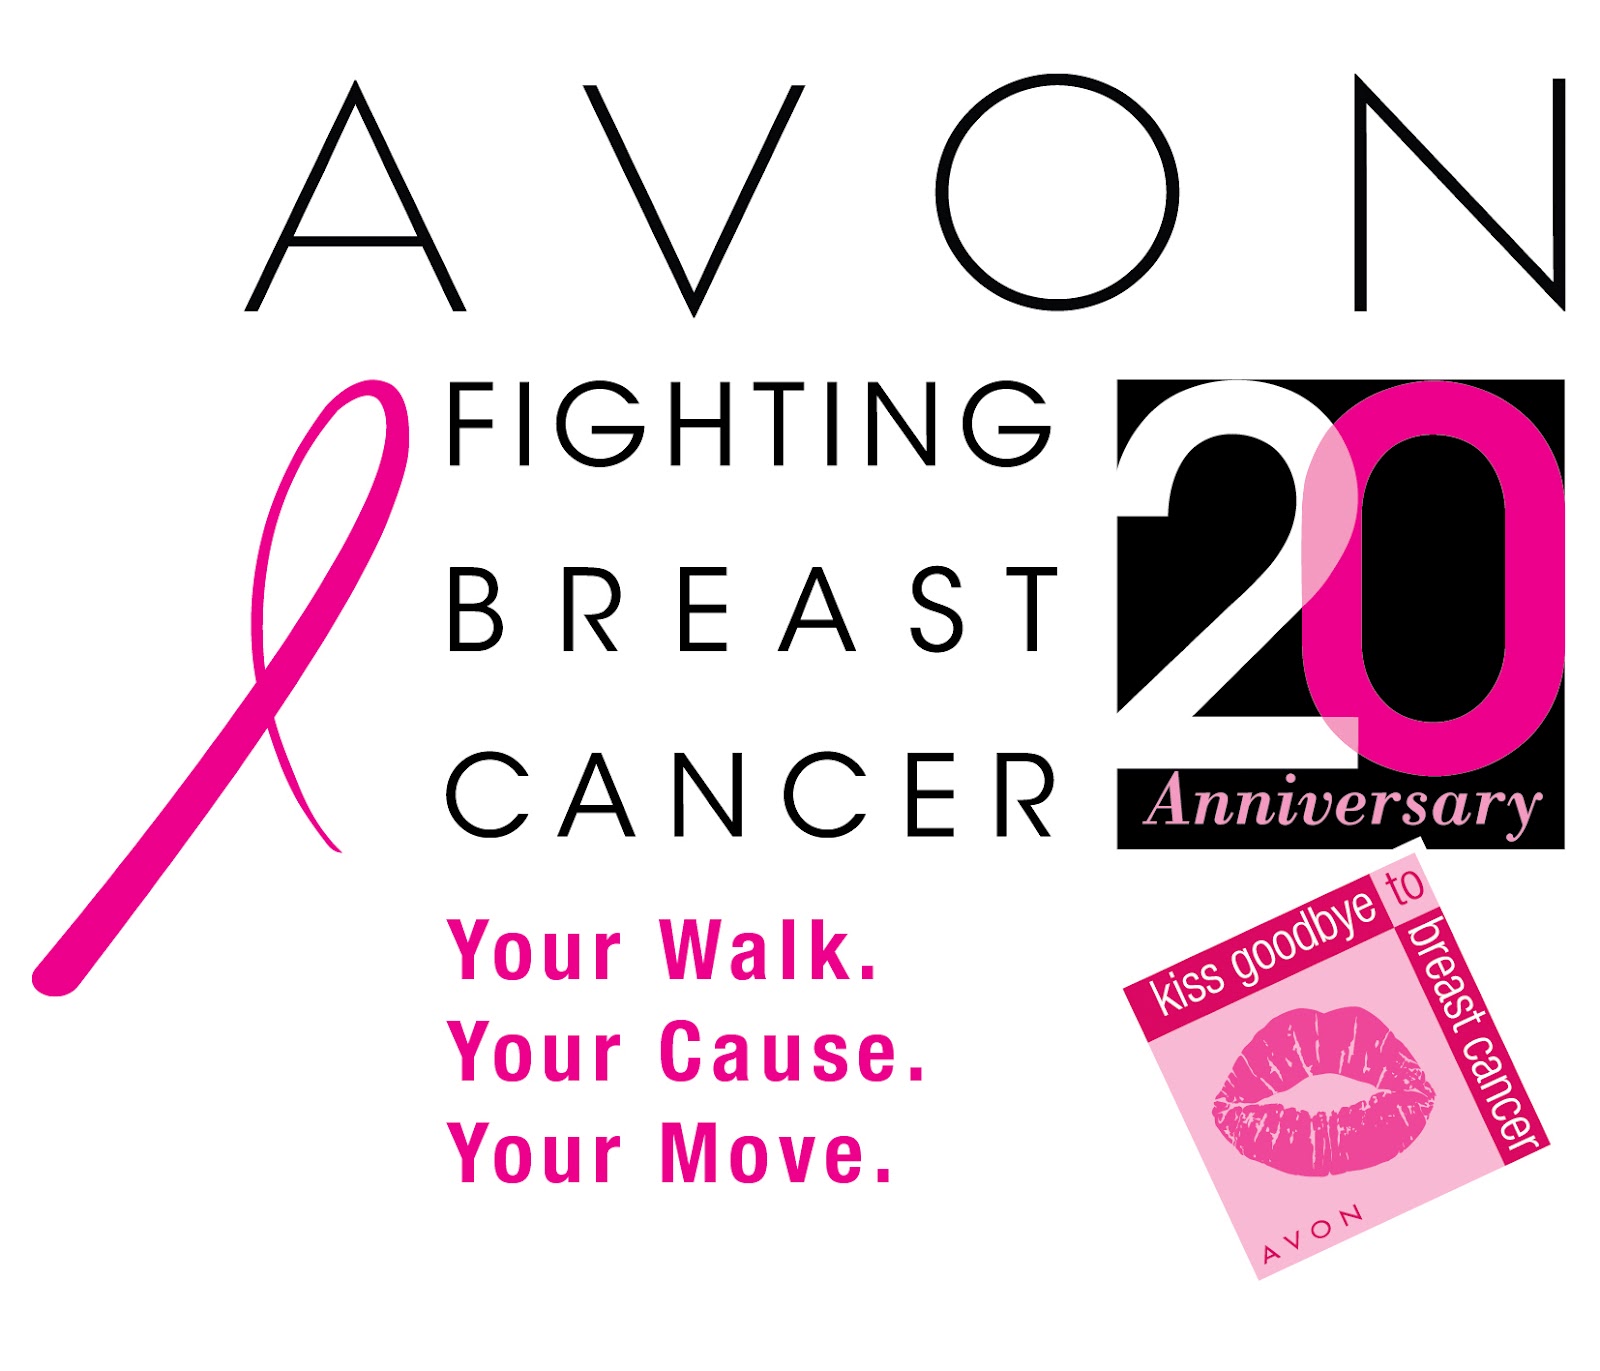 http://4.bp.blogspot.com/-4ZZdDEsMaic/UCFOO79d3lI/AAAAAAAAMcY/kRC6CzRx0pk/s1600/Avon+Breast+Cancer+Walk+2012+5.jpg